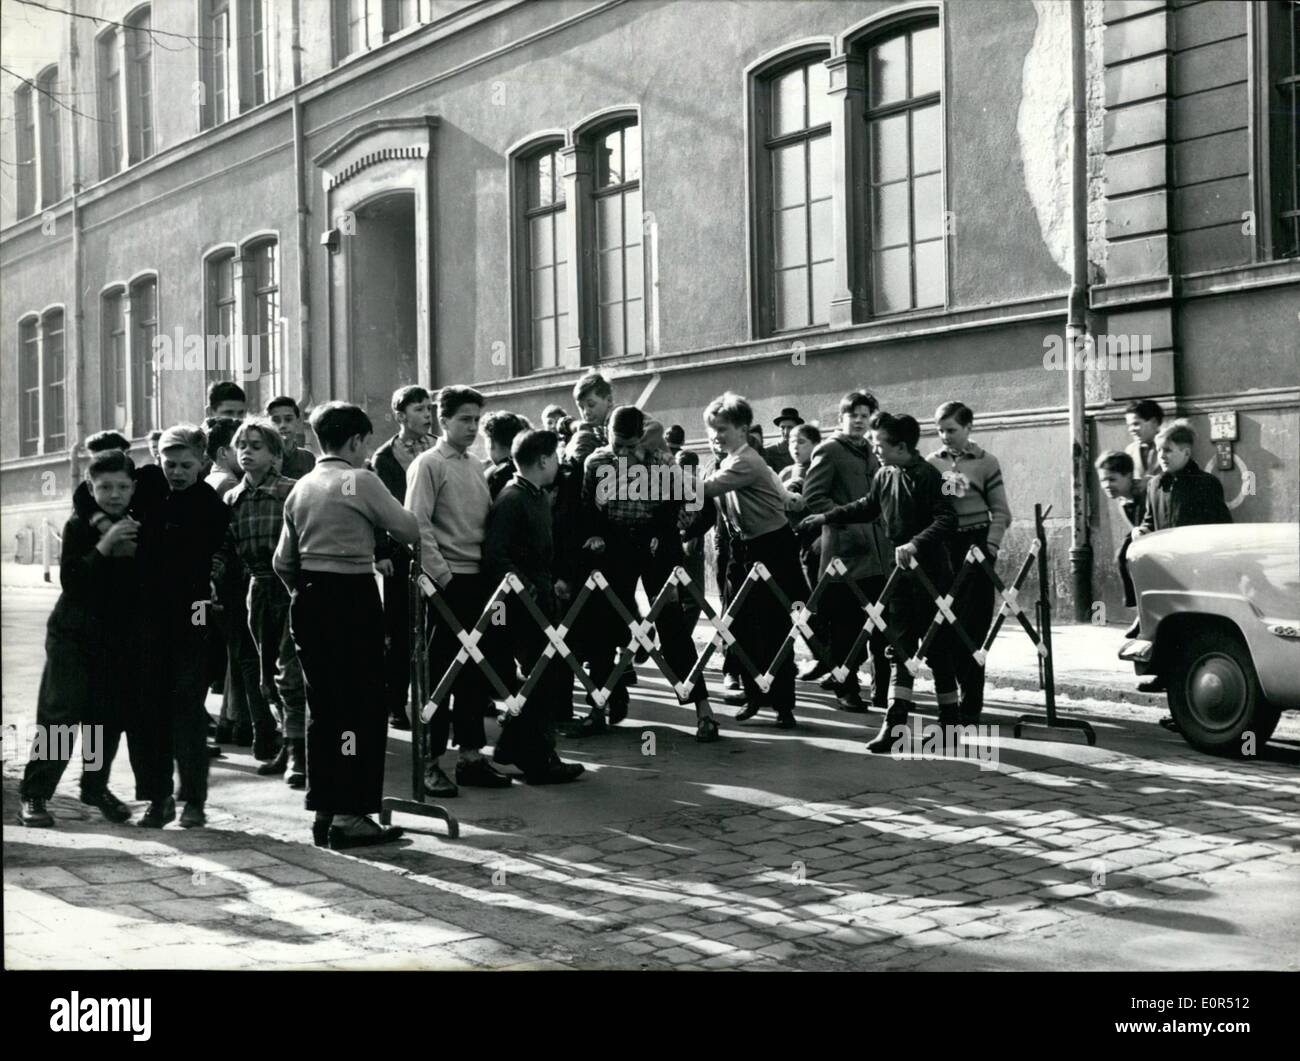 Mar. 03, 1958 - La rue que l'école ----- COUR... une solution de détresse pour les élèves d'une école à Wiesbaden. Pendant la pause, ils accroissent blanc rougeâtre des clôtures à deux côtés de la rue. Parce qu'ils n'ont pas d'autres possibilités, la rue a pour servir de cour de l'école. Banque D'Images